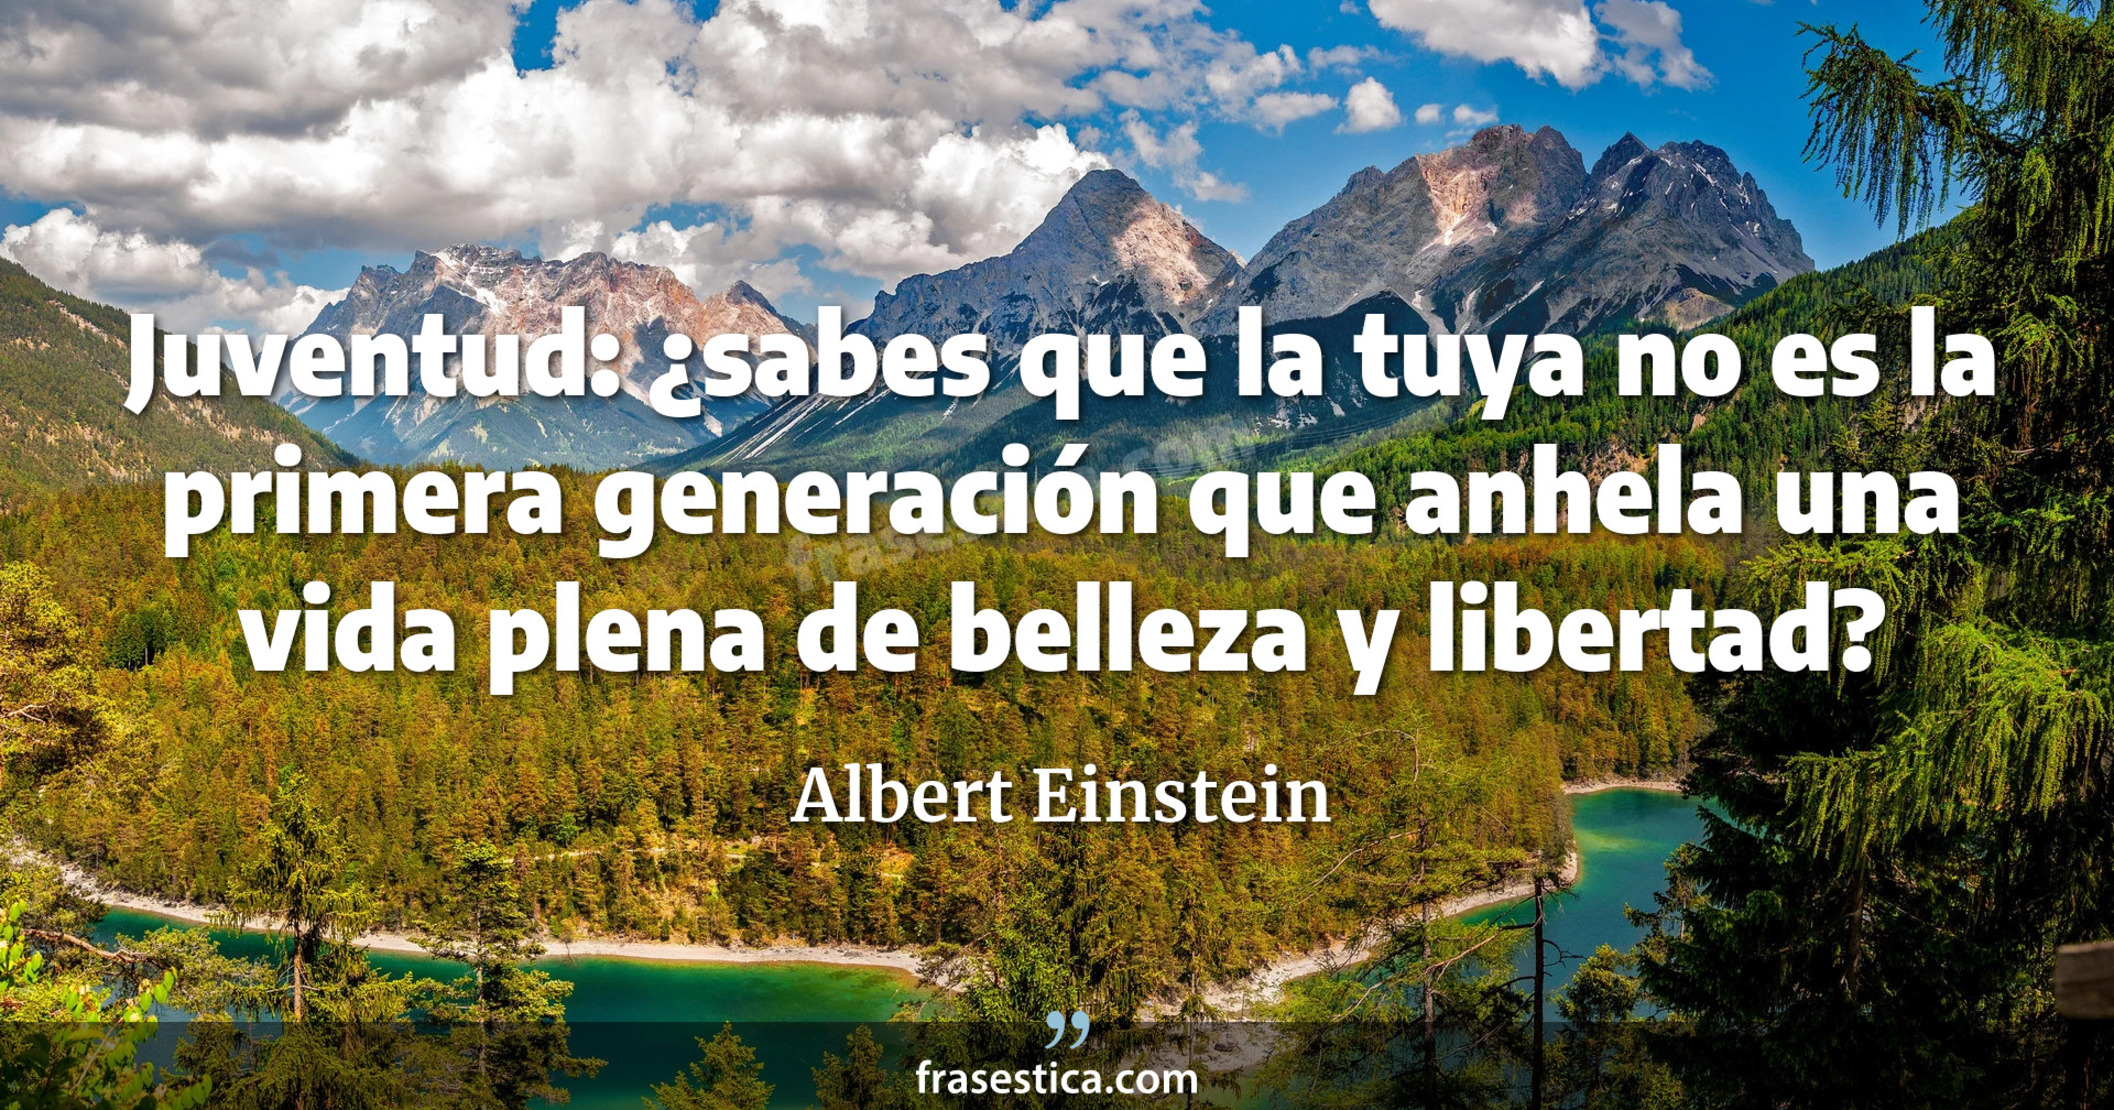 Juventud: ¿sabes que la tuya no es la primera generación que anhela una vida plena de belleza y libertad? - Albert Einstein